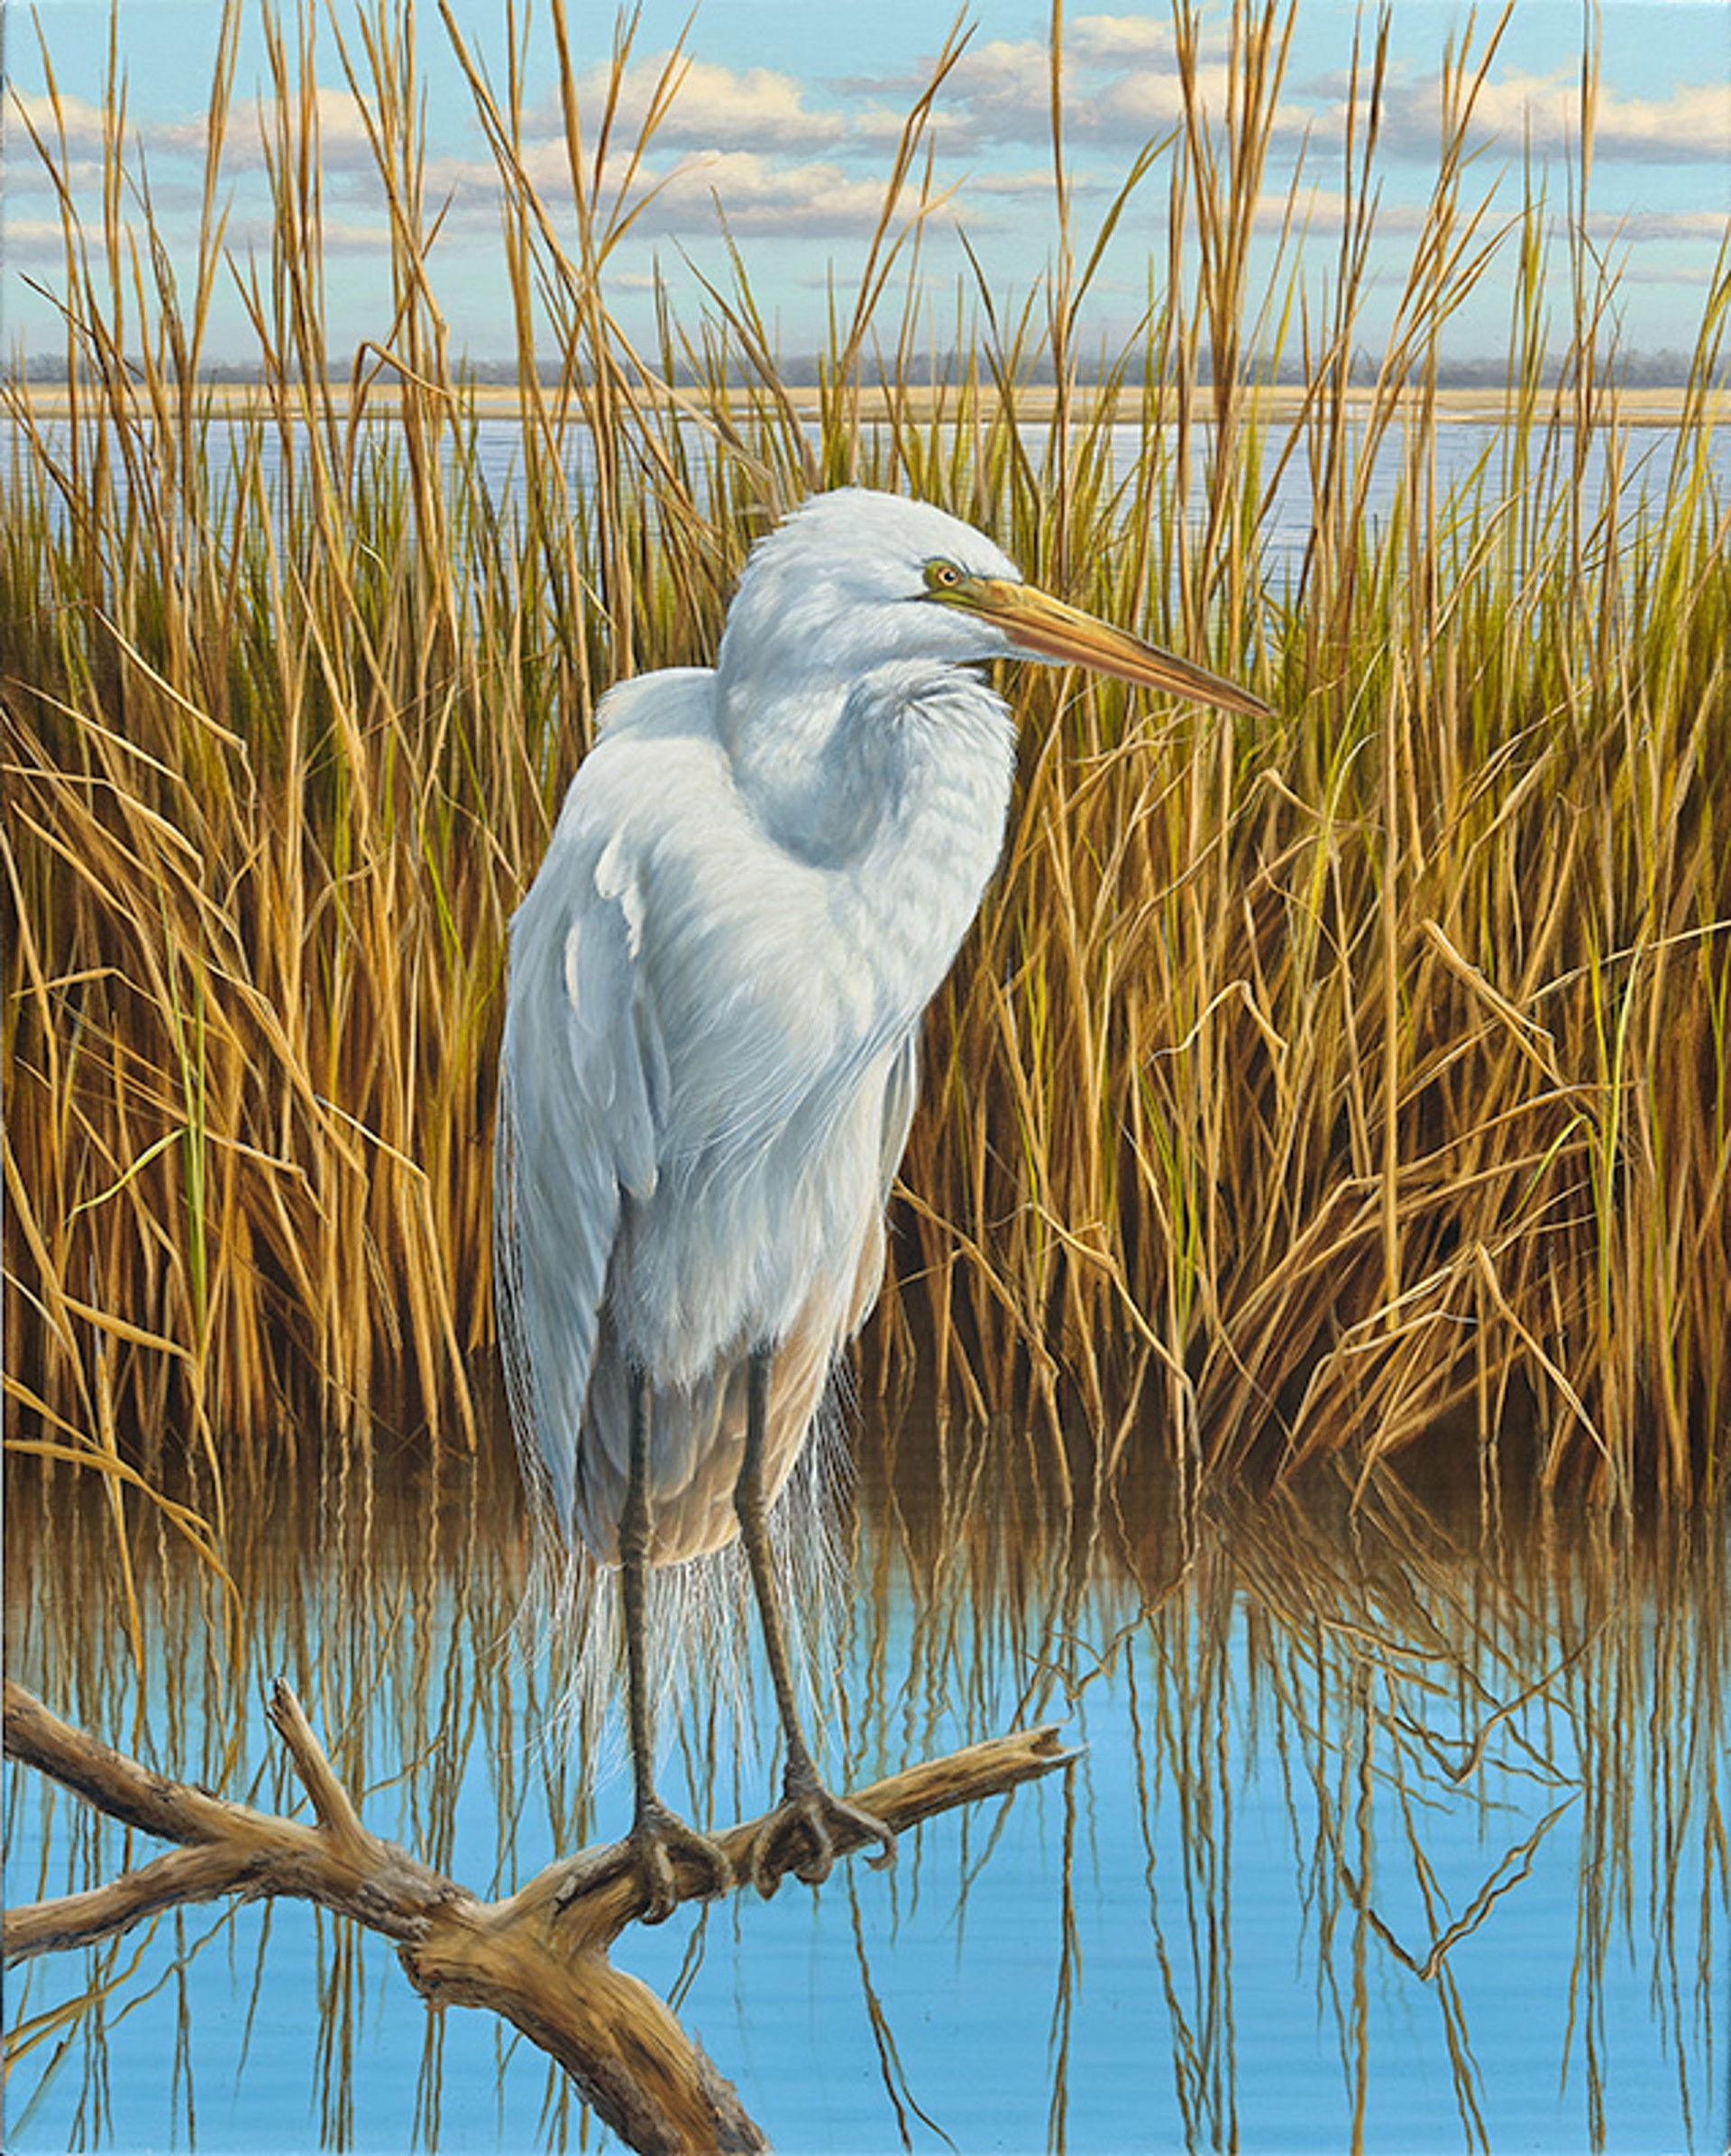 White Egret by HENRY VON GENK III